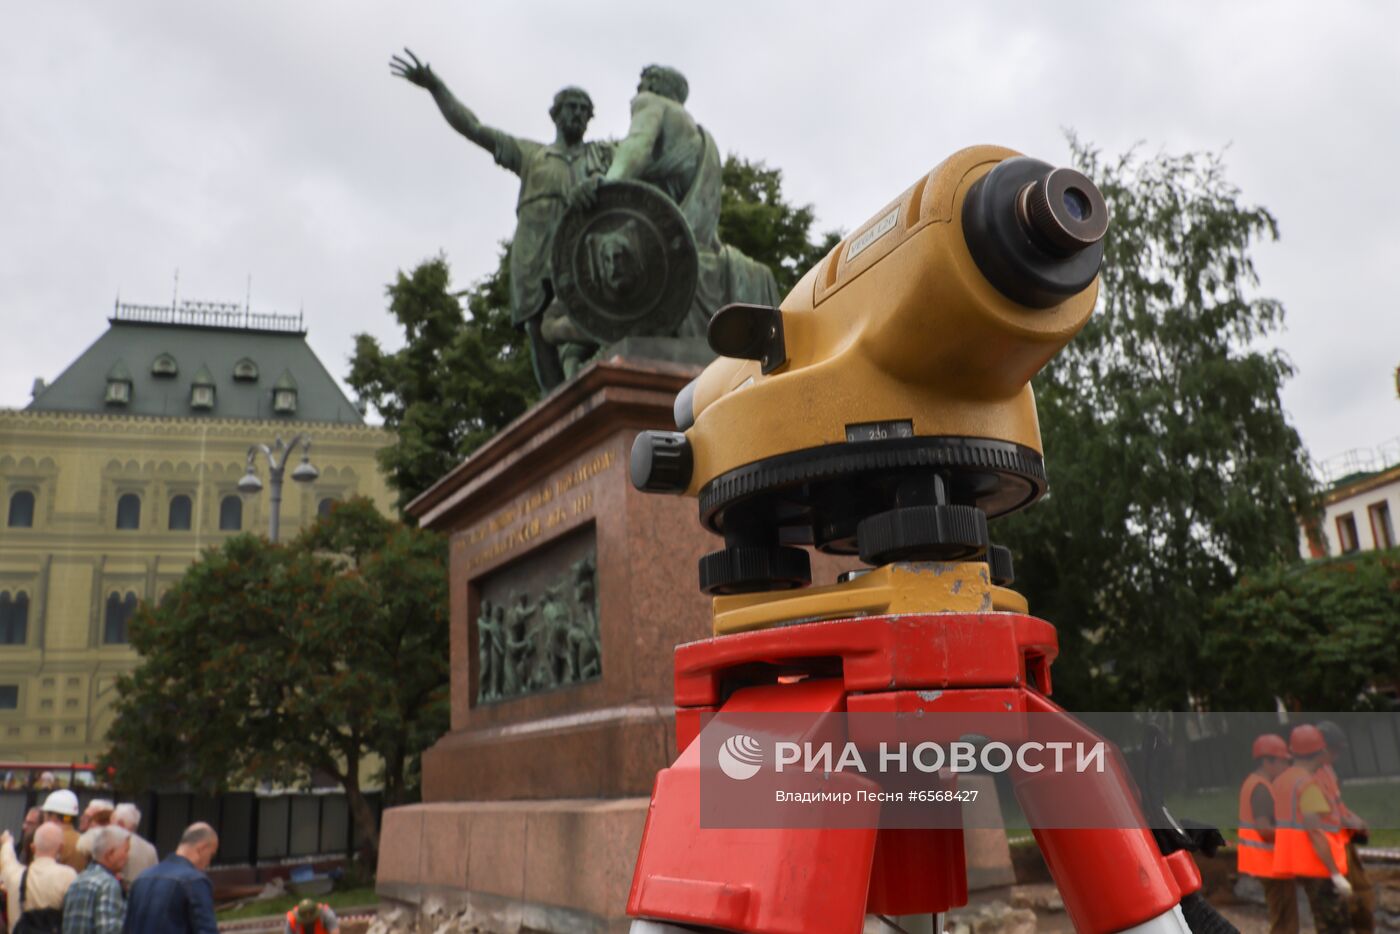 Начало реставрации памятника Минину и Пожарскому